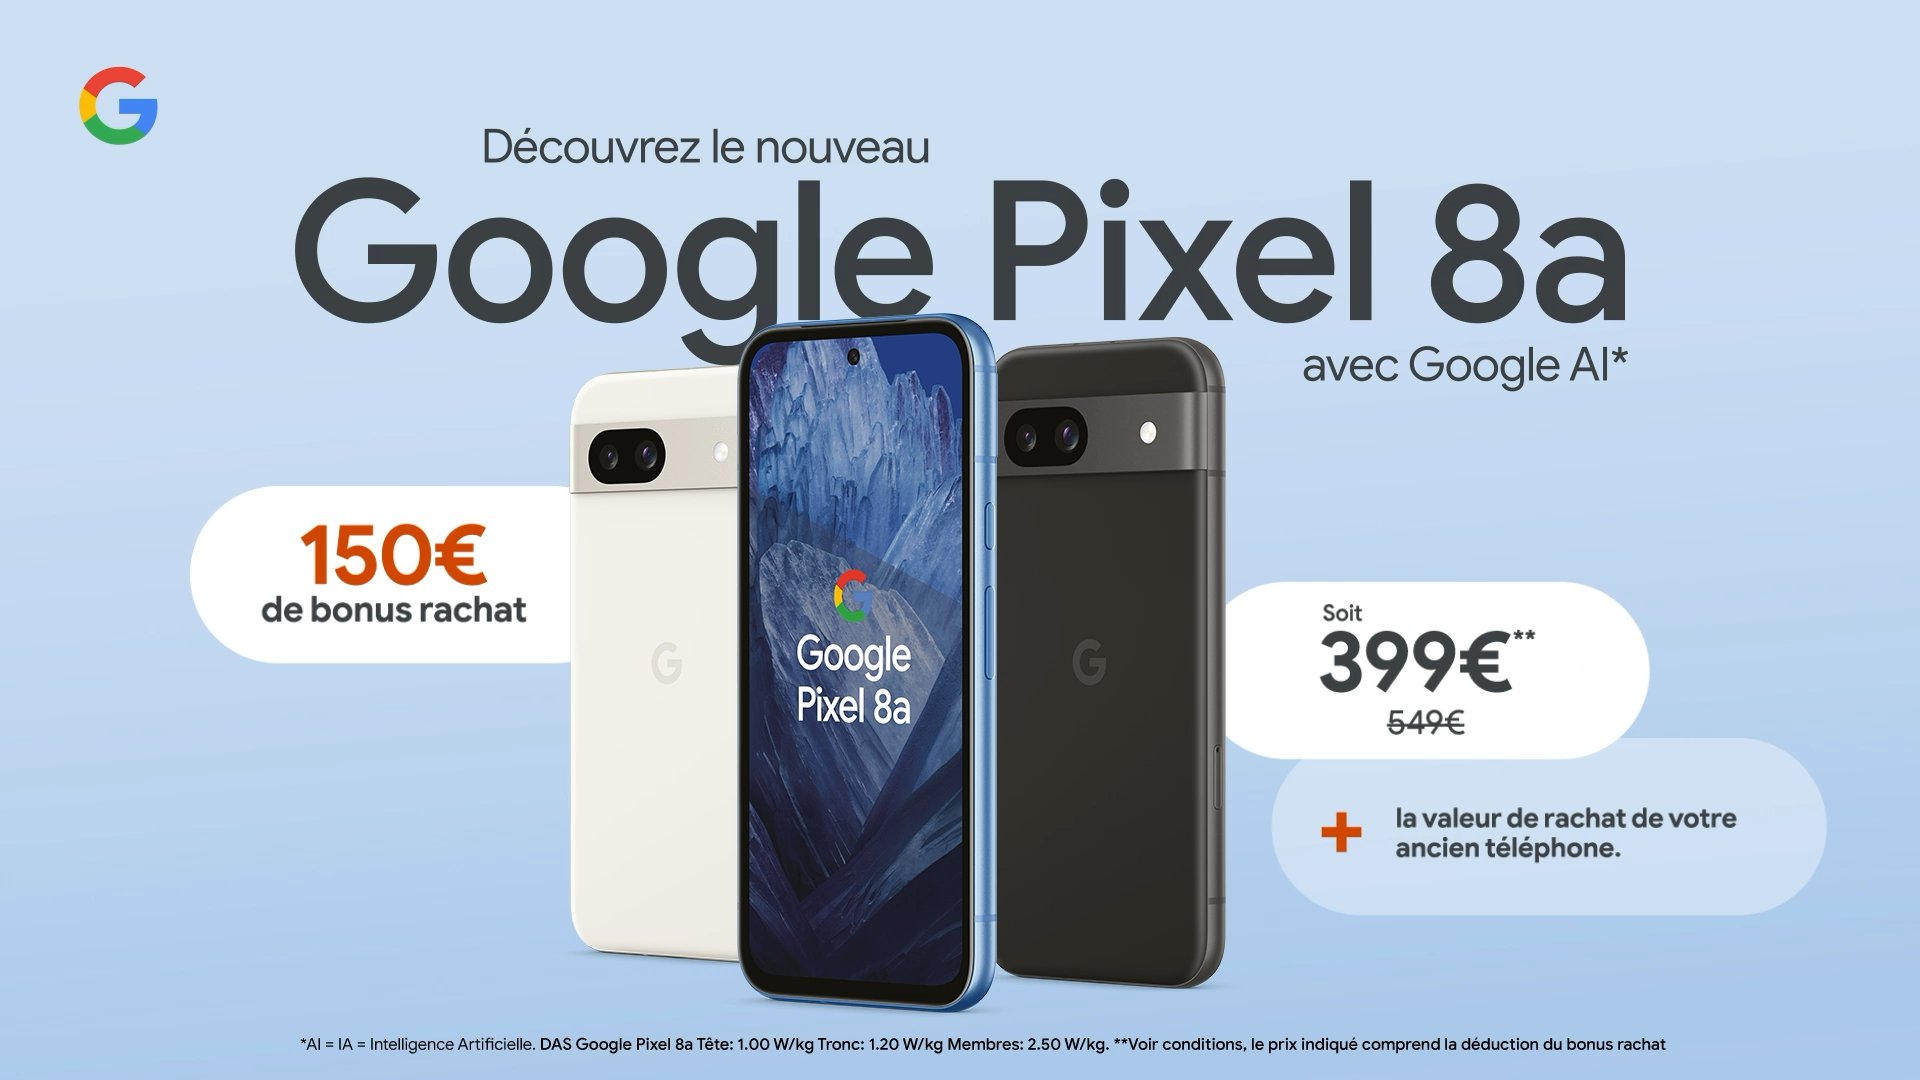 Google Pixel 8a a divulgué les prix européens